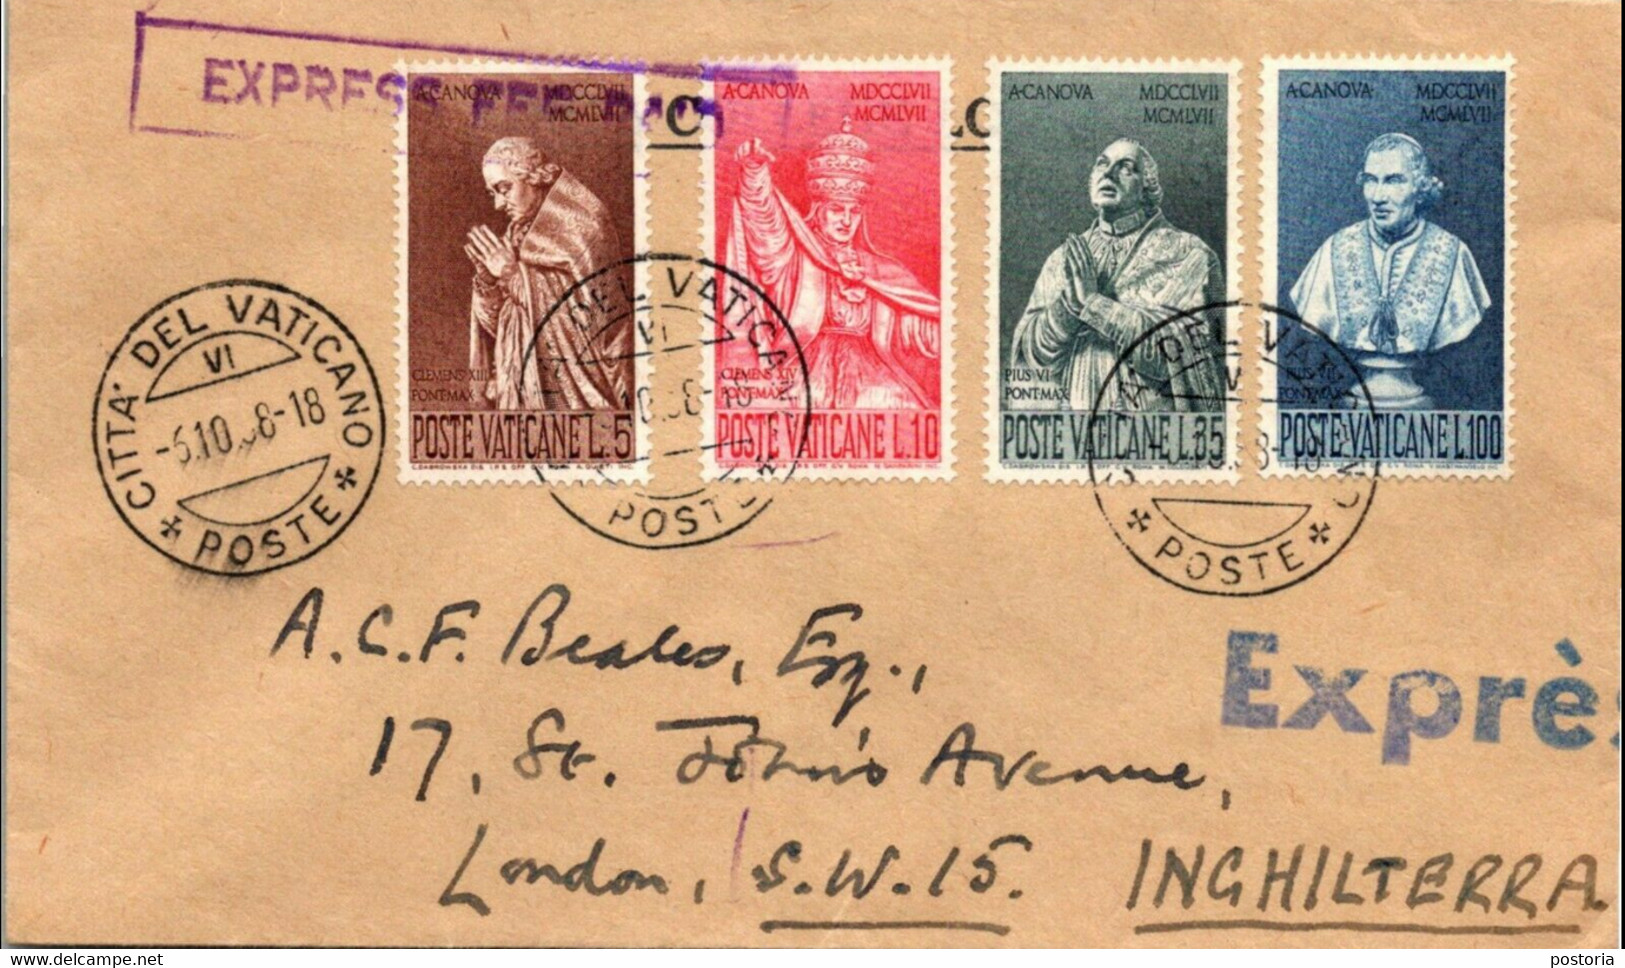 Vaticaan - Envelop - 1958 - Vaticaanstad Naar Londen Engeland - Michel 296 T/m 299 - Complete Serie Antonio Canova - Lettres & Documents